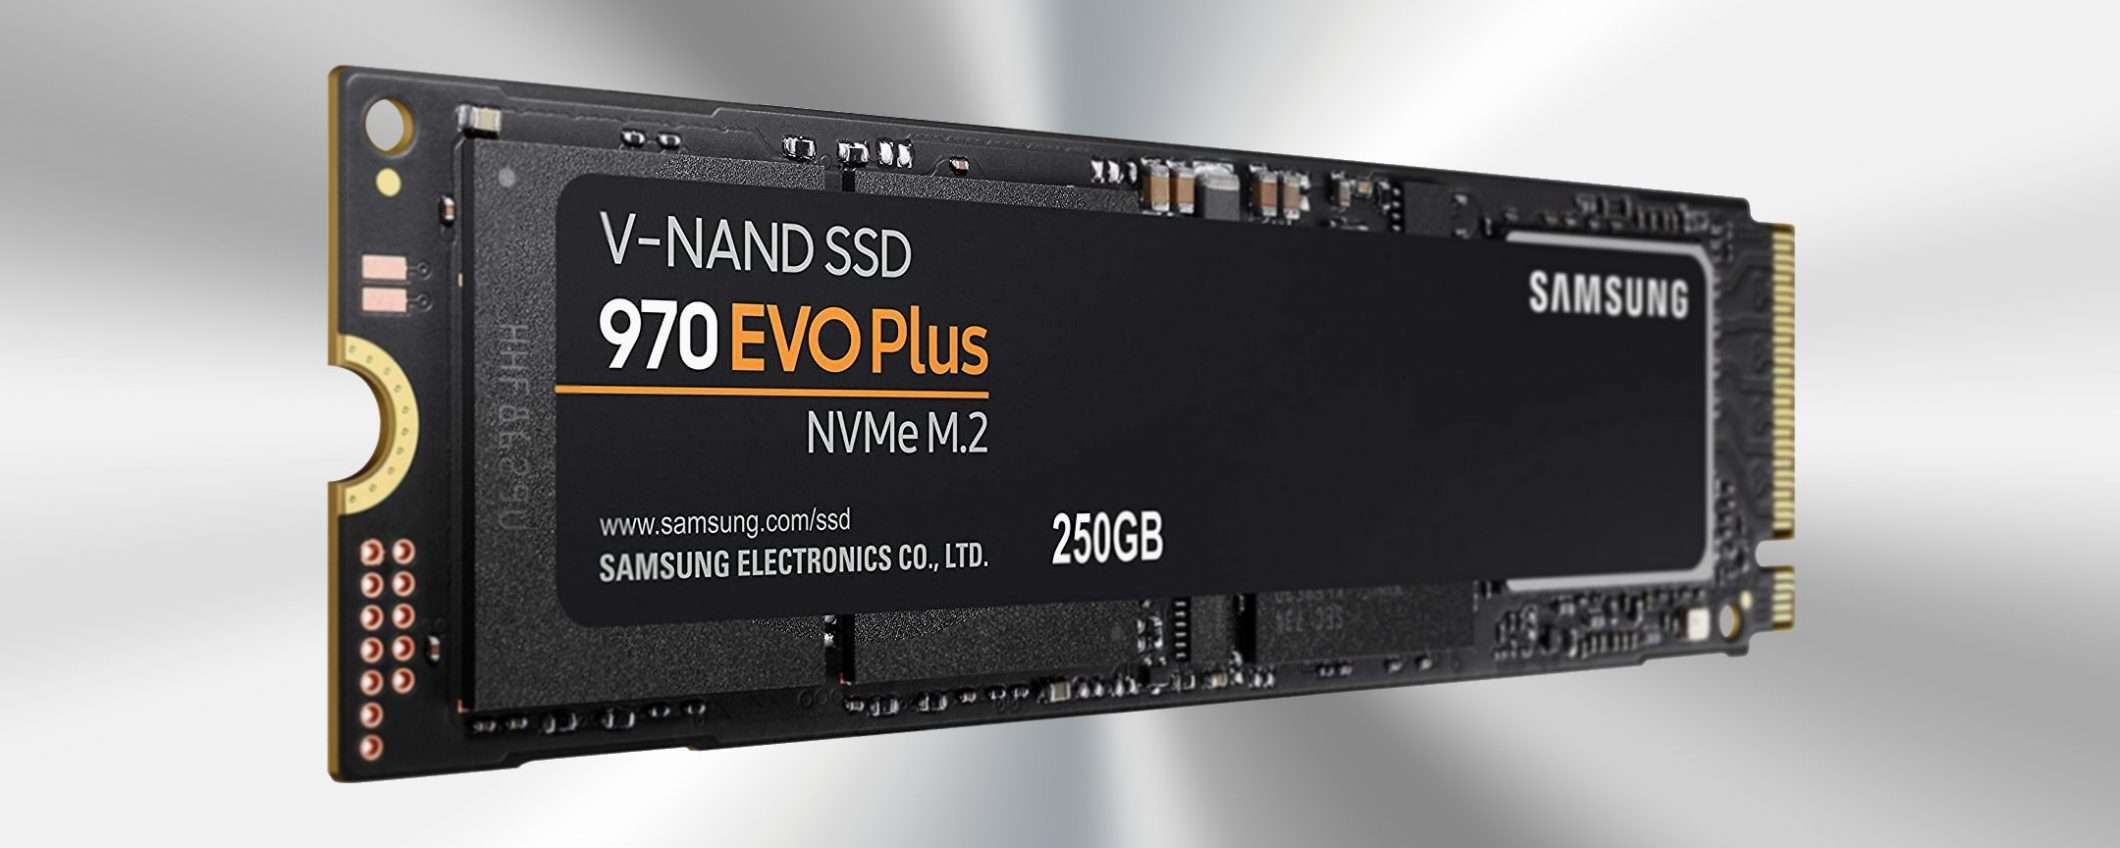 SSD Samsung 970 EVO Plus: prezzo e performance super